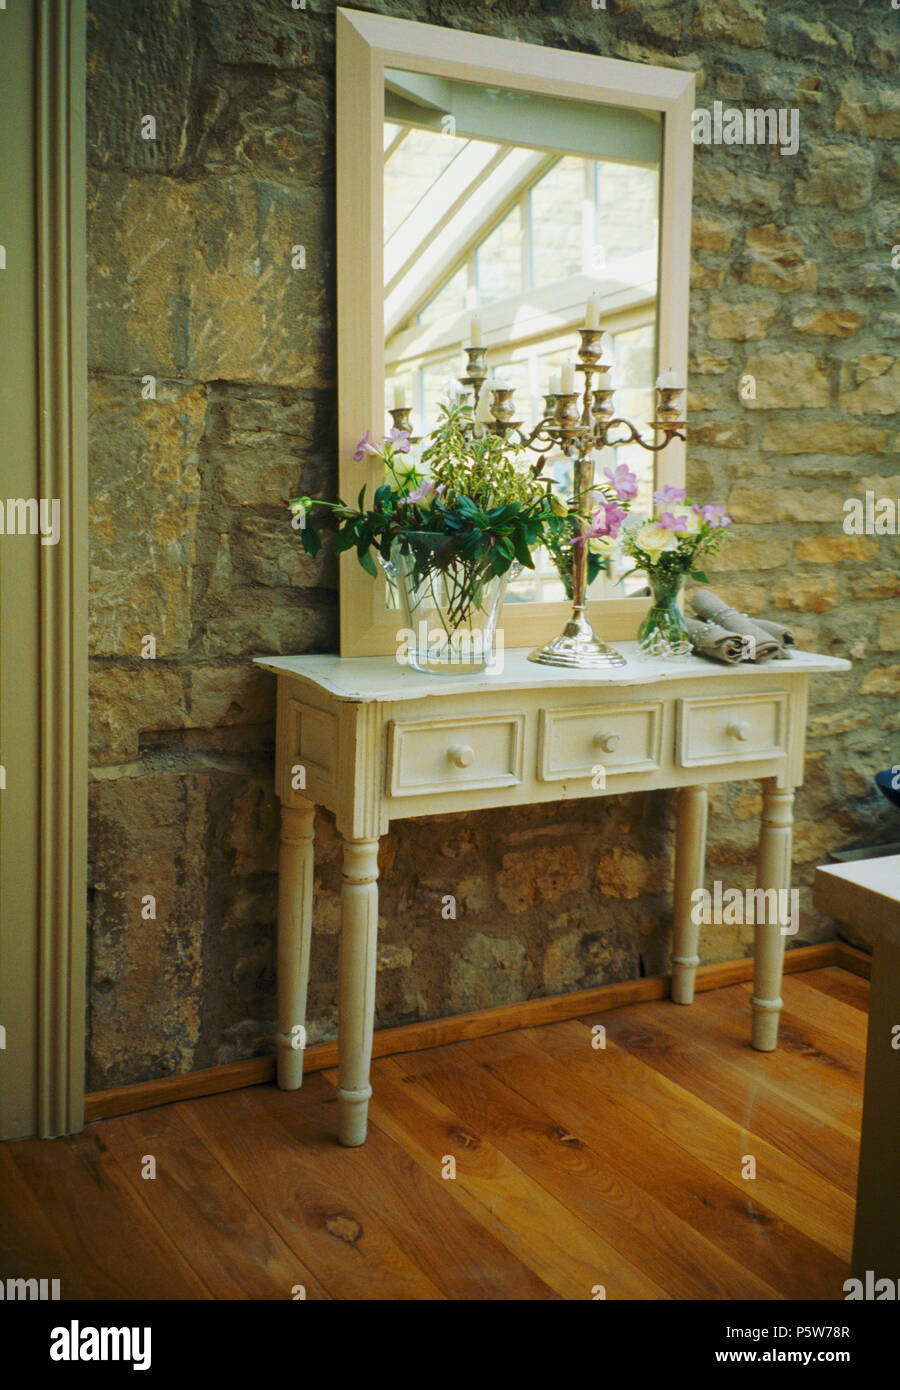 Spiegel über weiße Konsole Tisch gegen Stein Wand im Land Halle Stockfoto